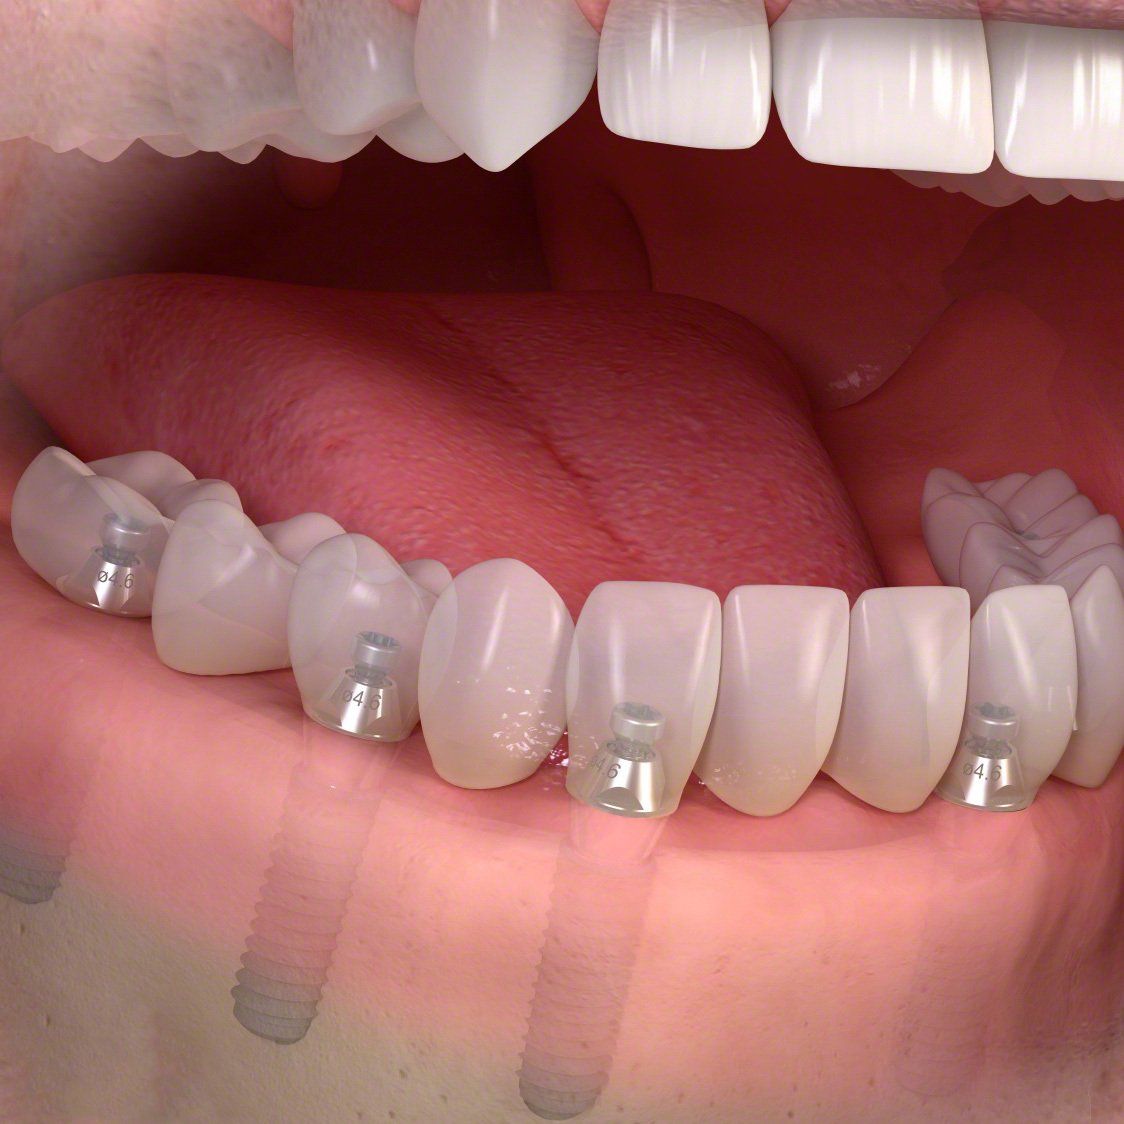 Un primo piano dei denti di una persona con l'apparecchio ortodontico